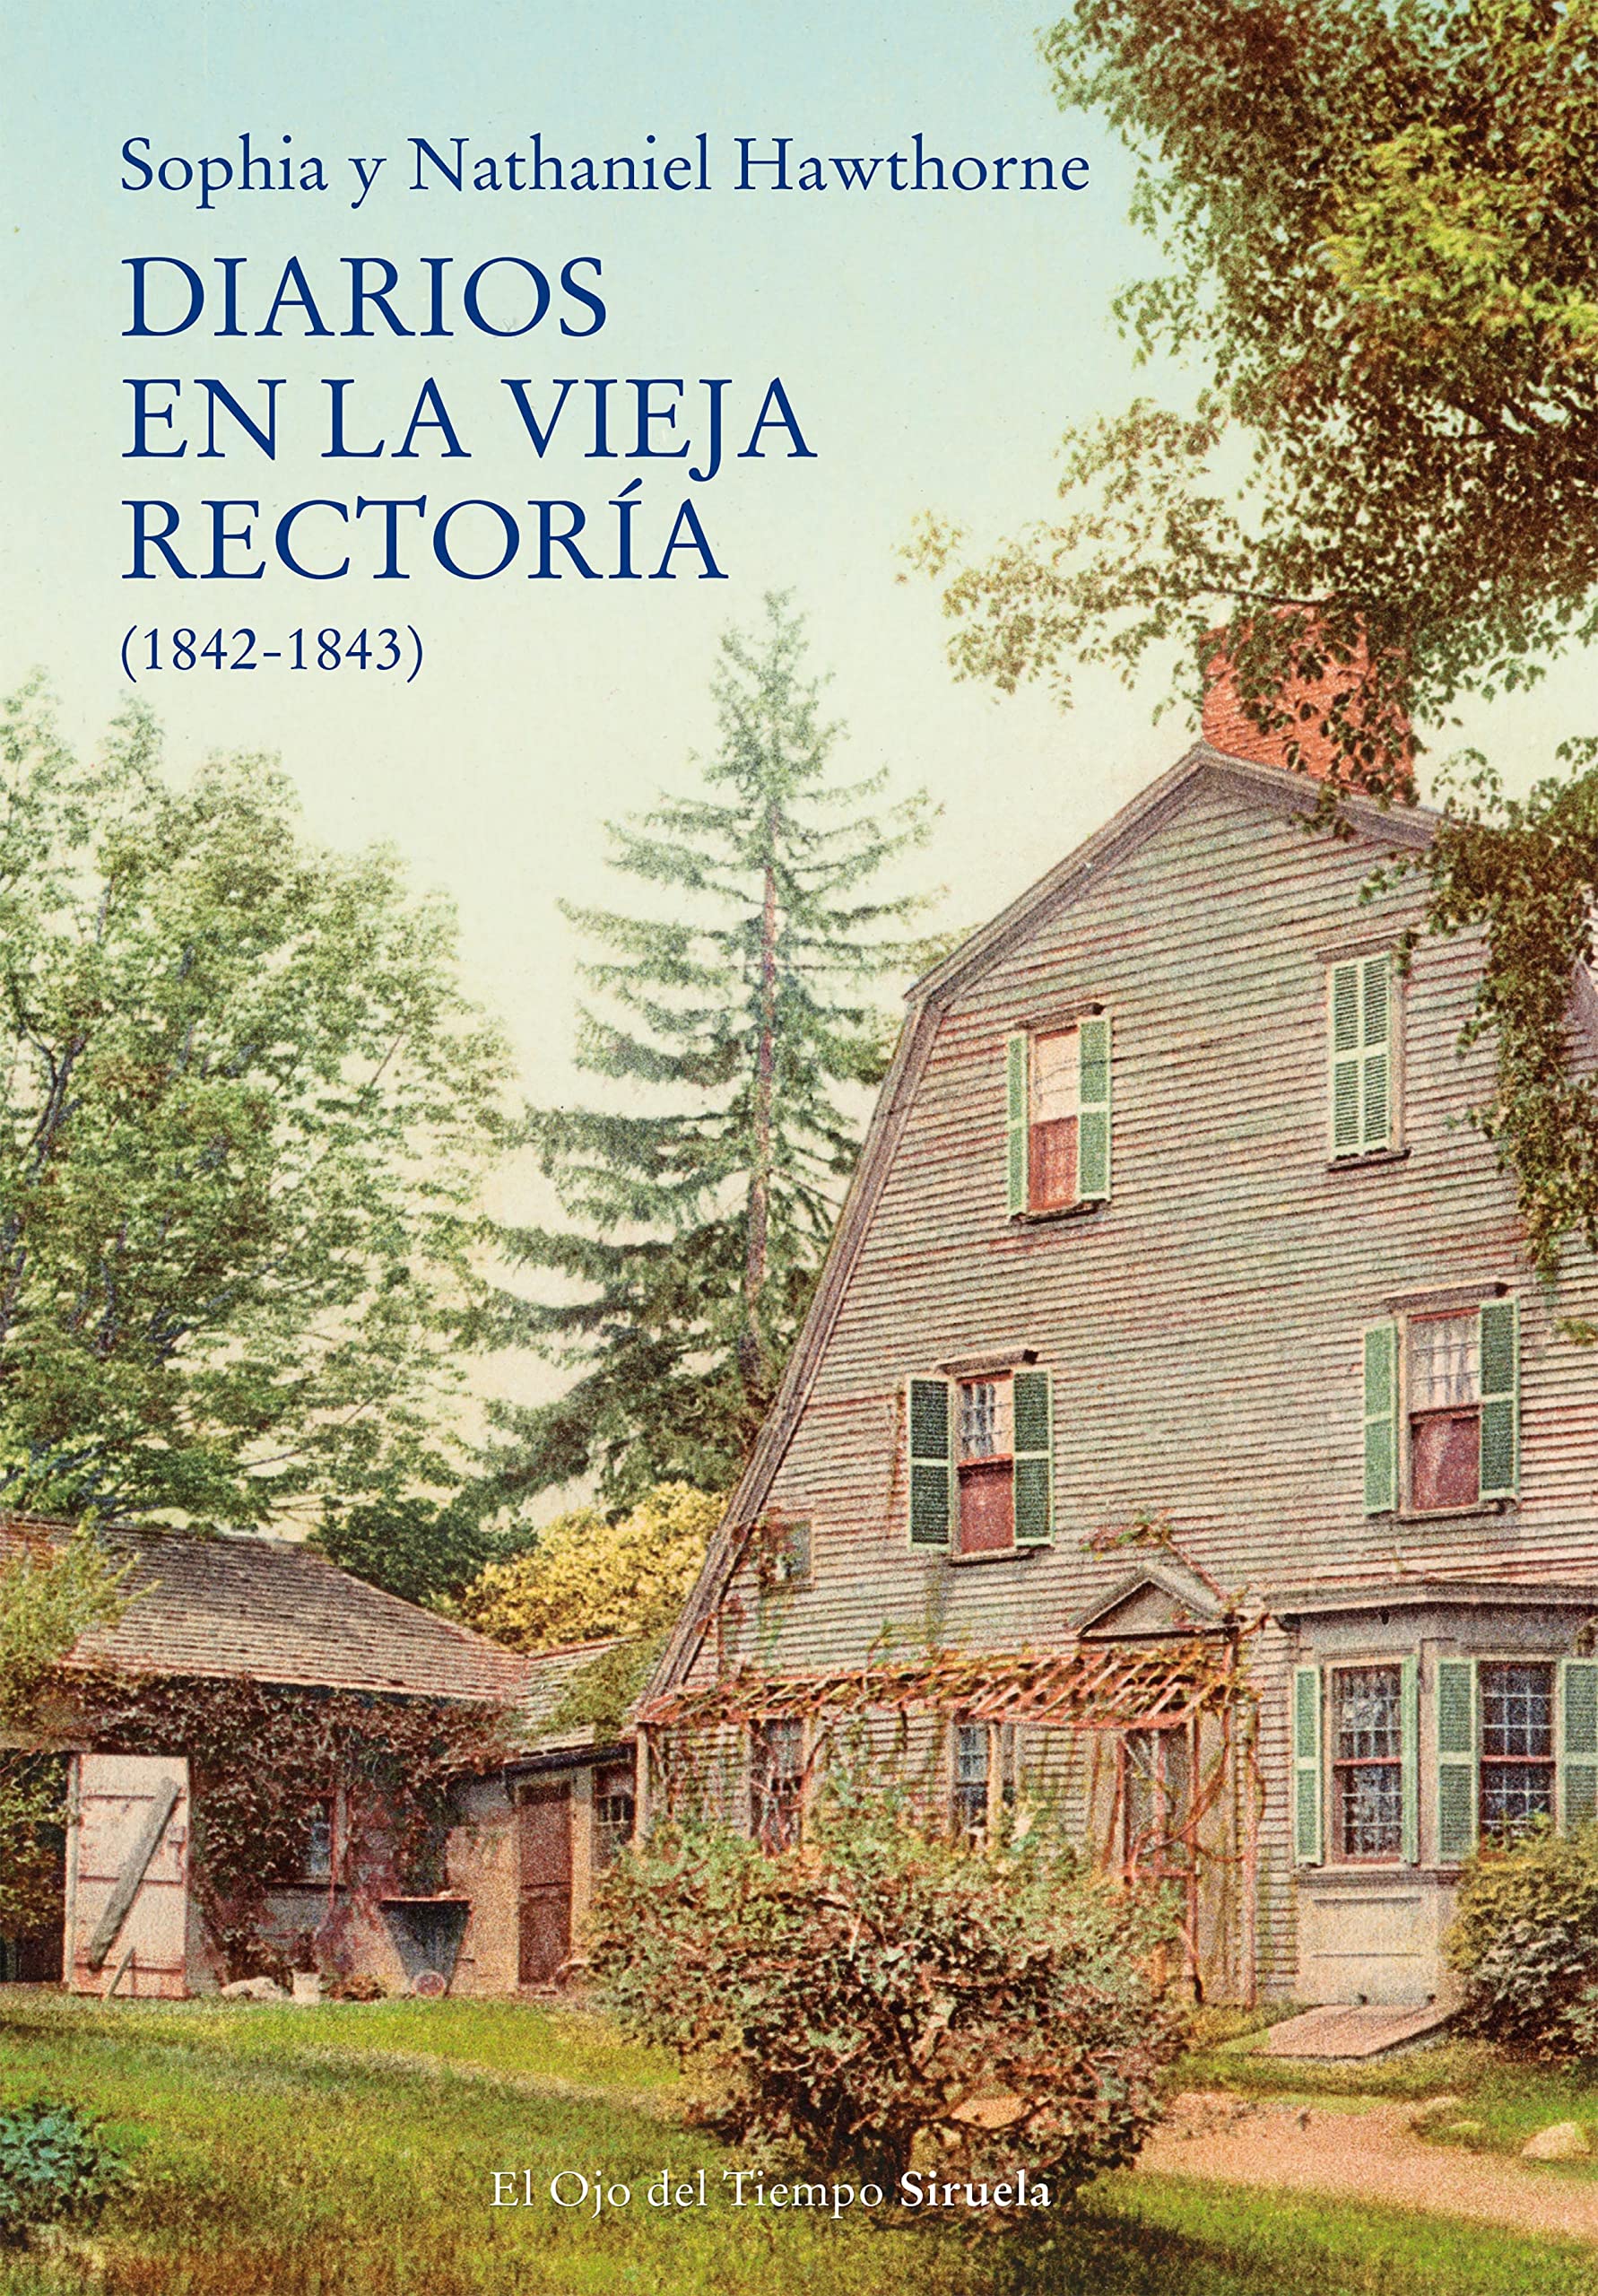 Zenda recomienda: Diarios en la vieja rectoría (1842-1843), de Sophia y Nathaniel Hawthorne